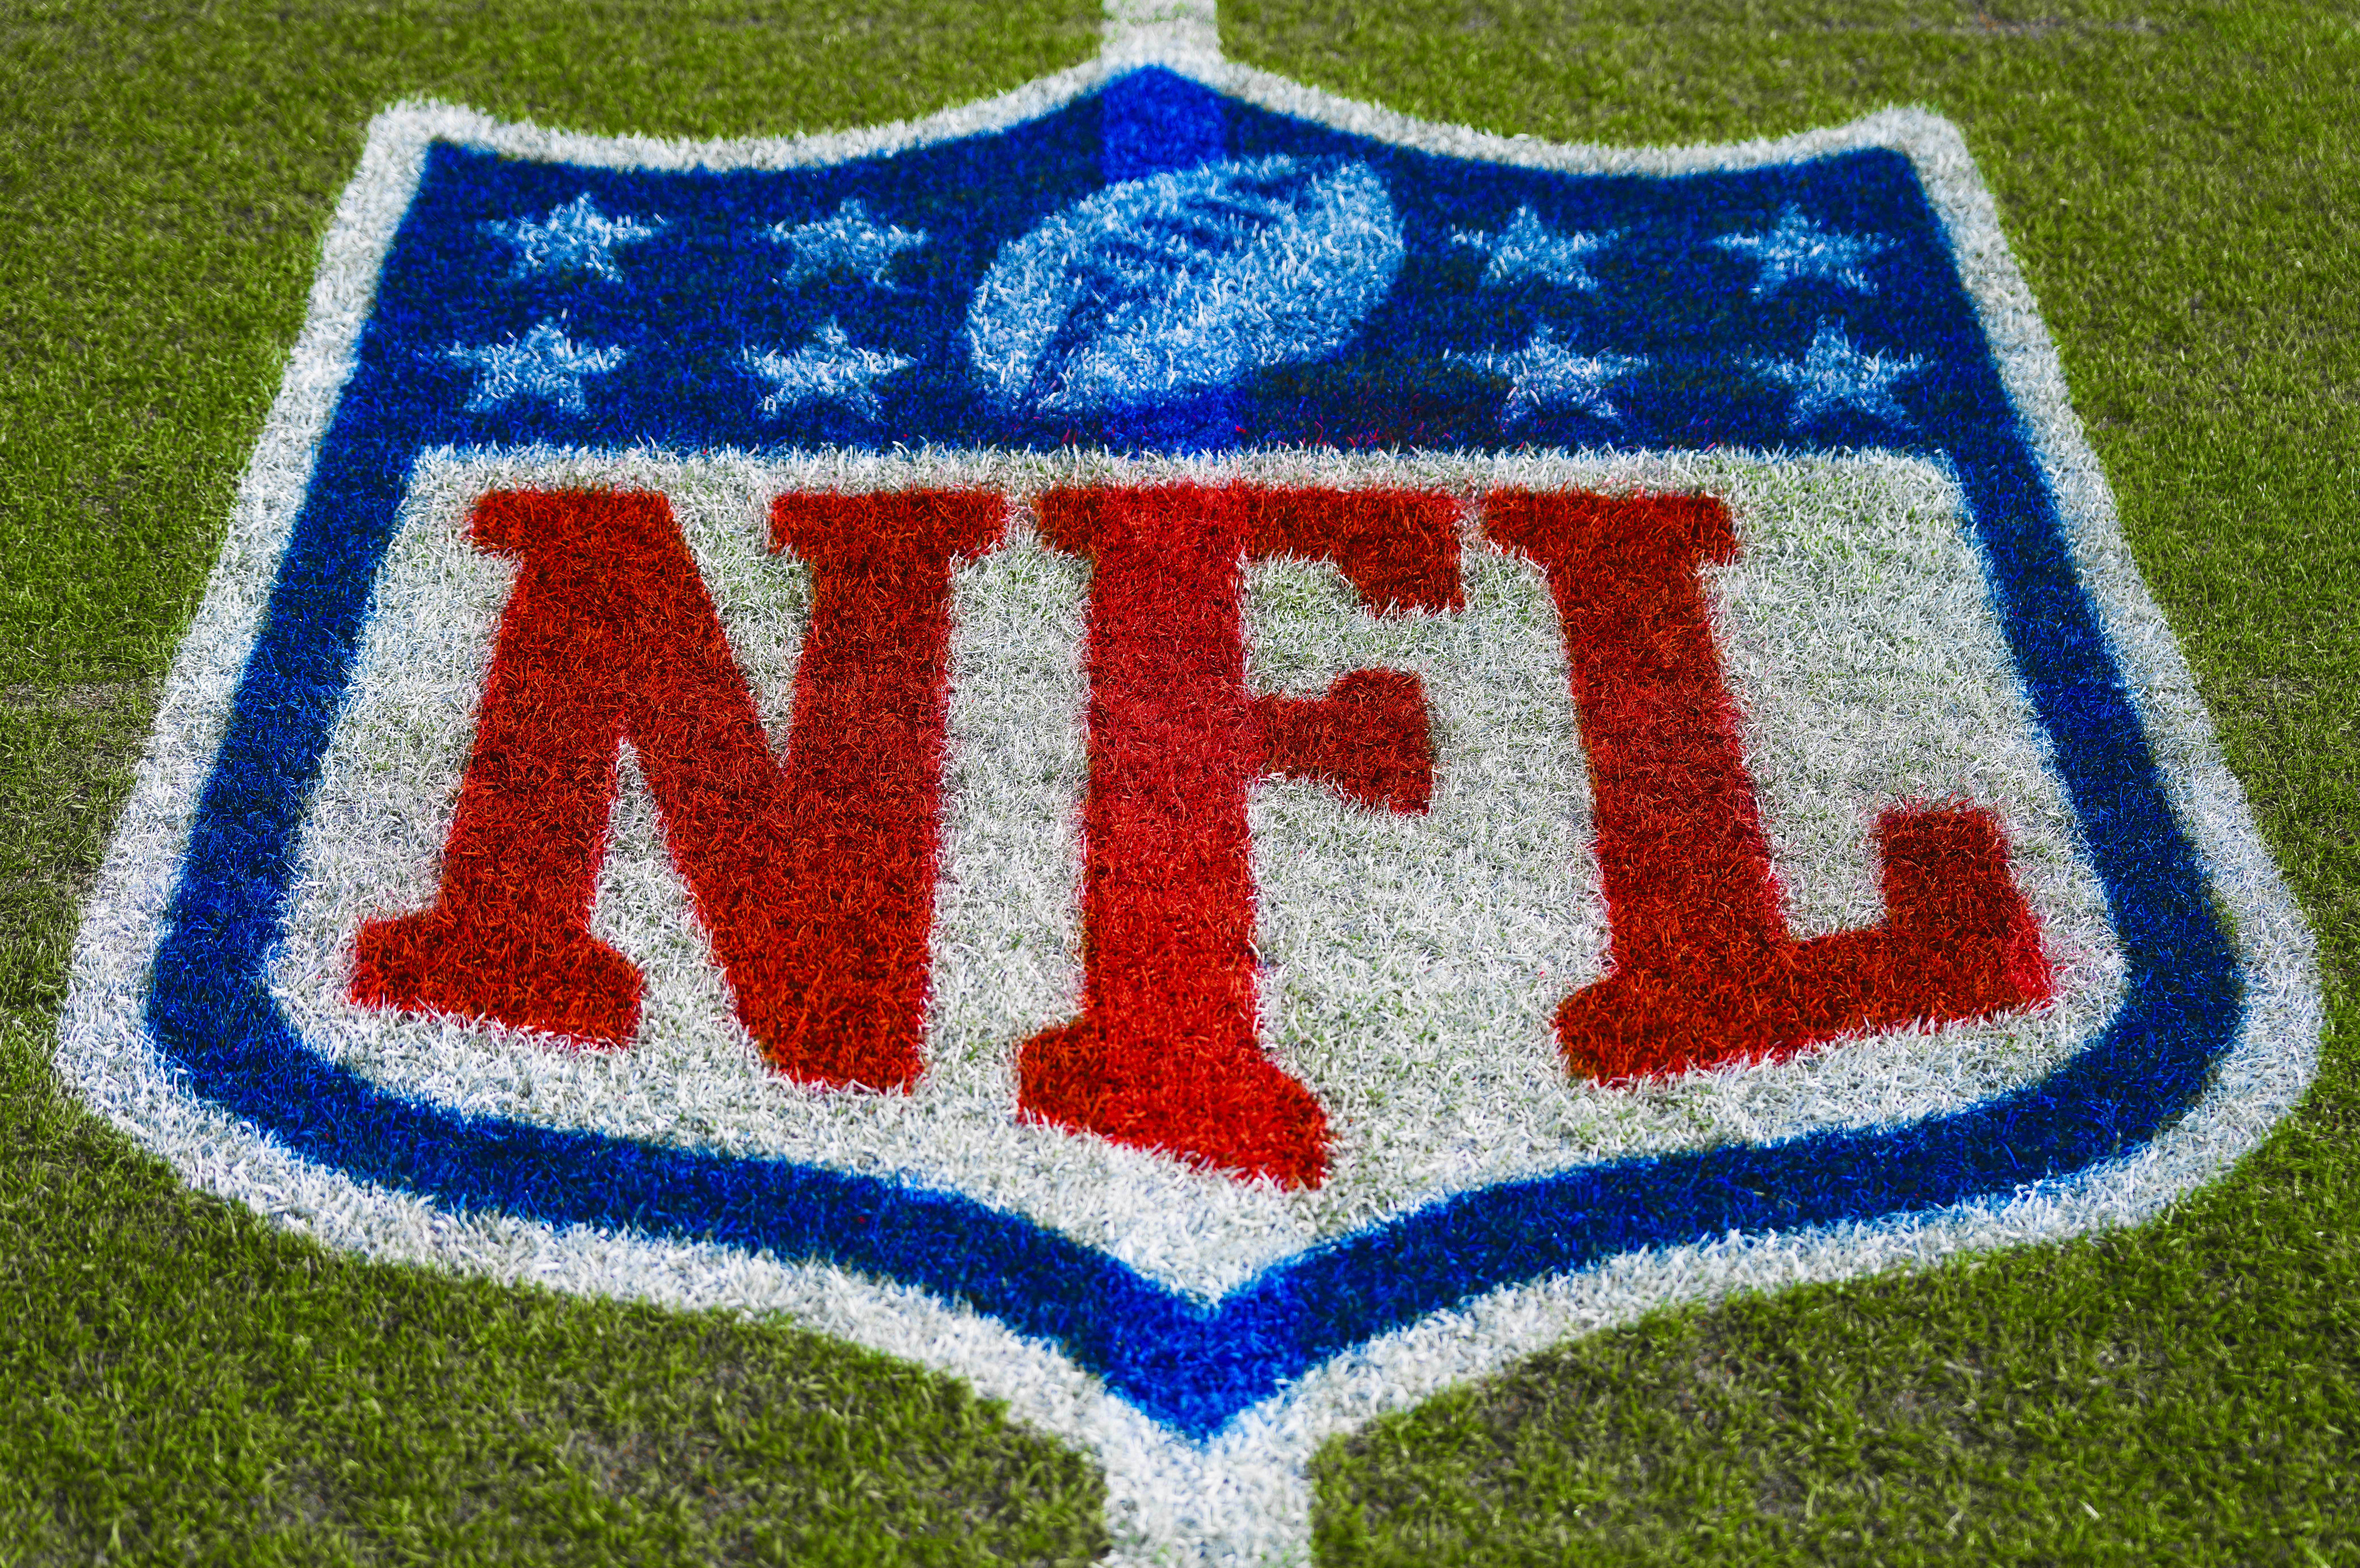 2023 NFL schedule release: Chiefs vs. Eagles Super Bowl rematch